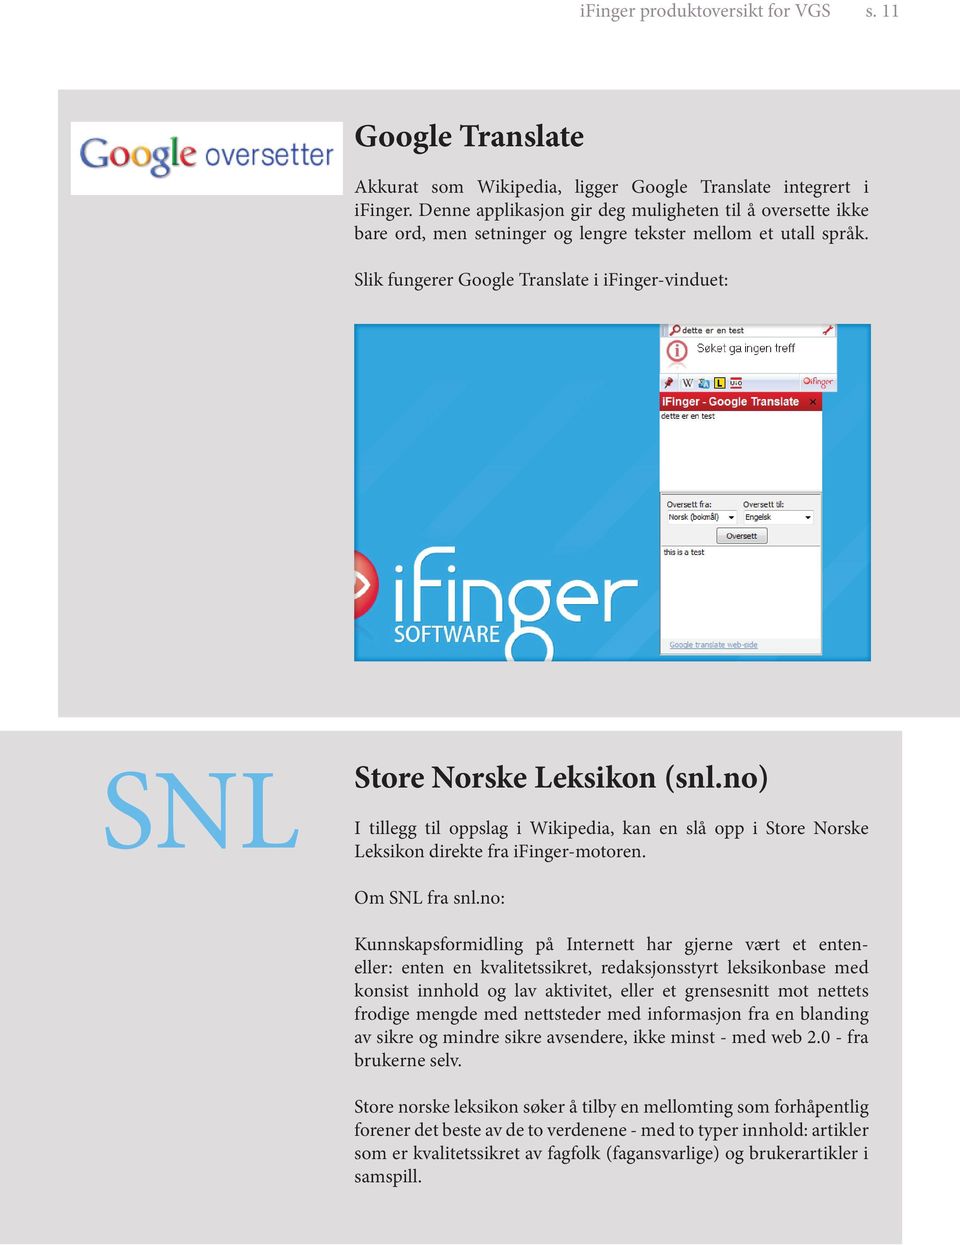 Slik fungerer Google Translate i ifinger-vinduet: SNL Store Norske Leksikon (snl.no) I tillegg til oppslag i Wikipedia, kan en slå opp i Store Norske Leksikon direkte fra ifinger-motoren.